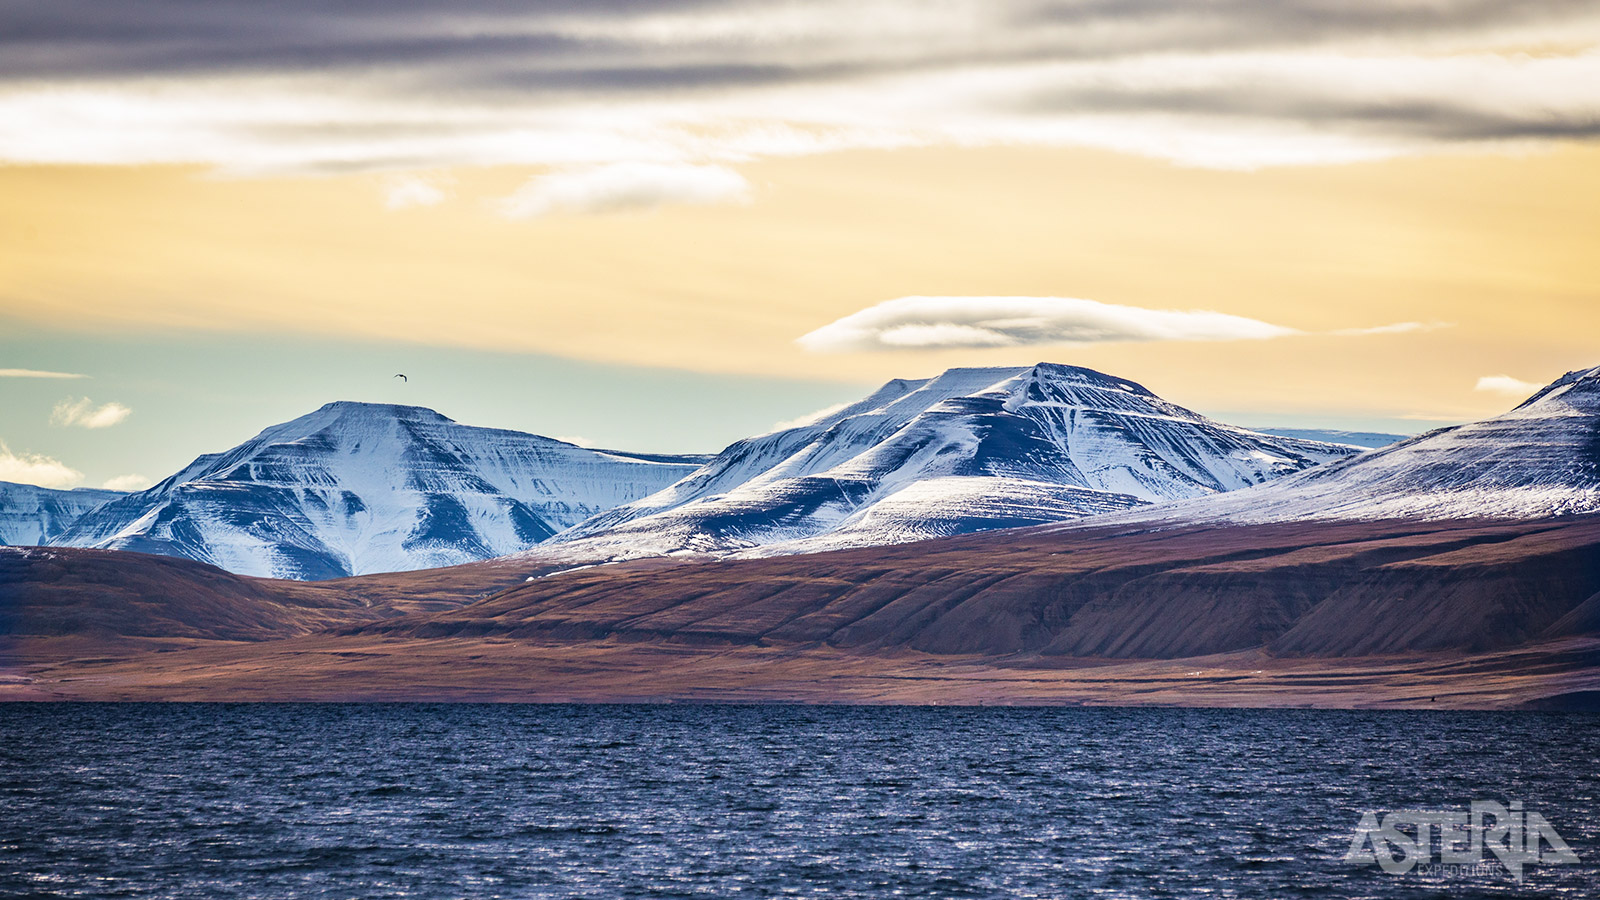 De landschappen op Spitsbergen zijn ruig, puur en zeer uiteenlopend